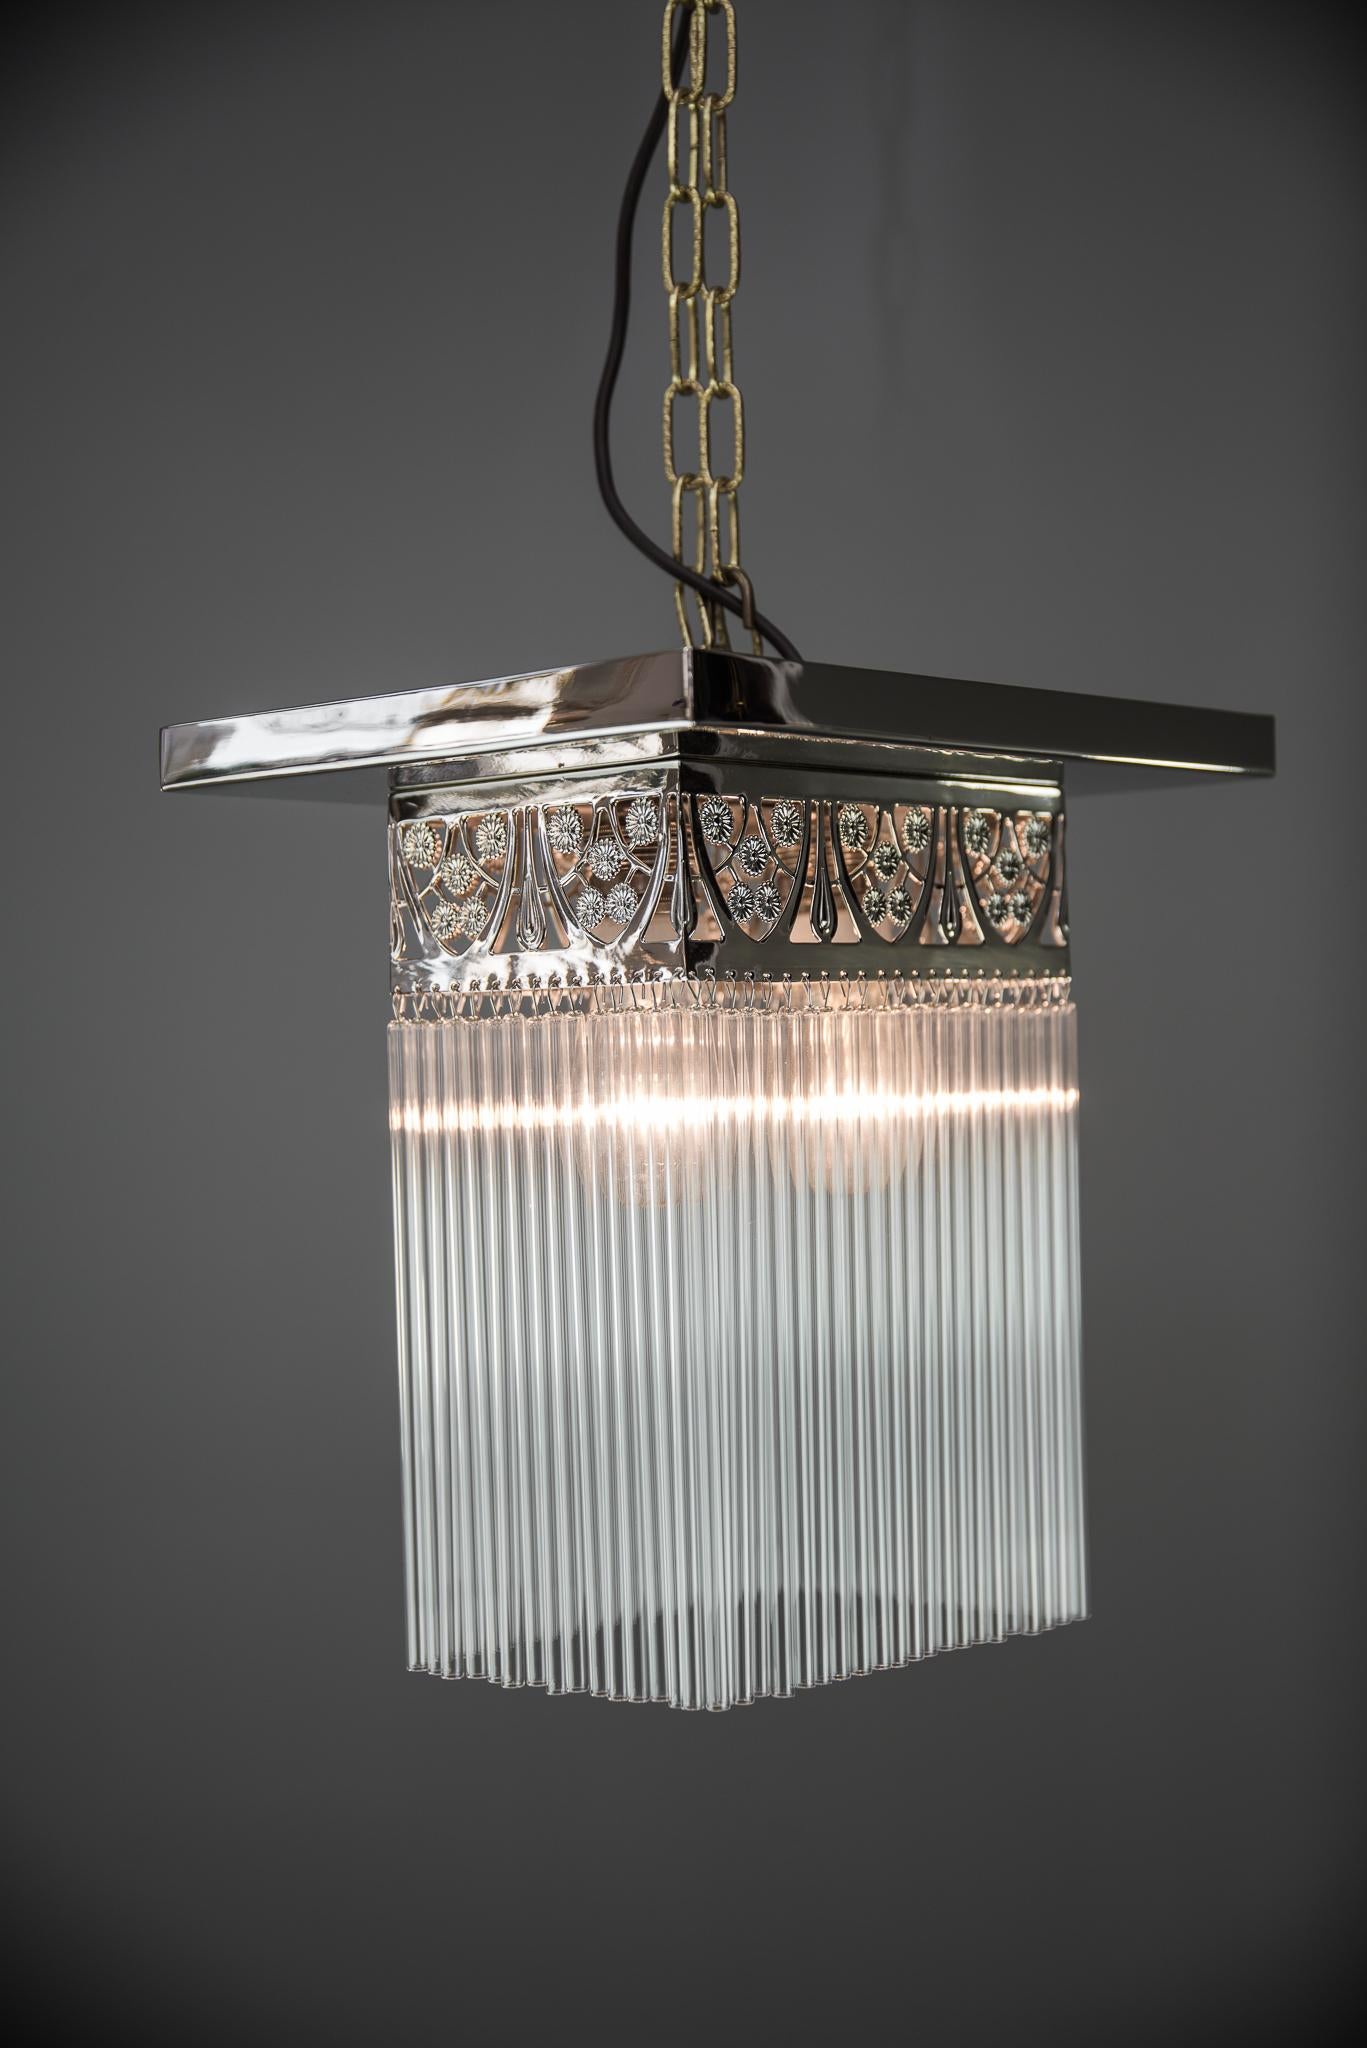 Rectangular Jugendstil Nickel-Plated Ceiling Lamp with Glass Sticks 1